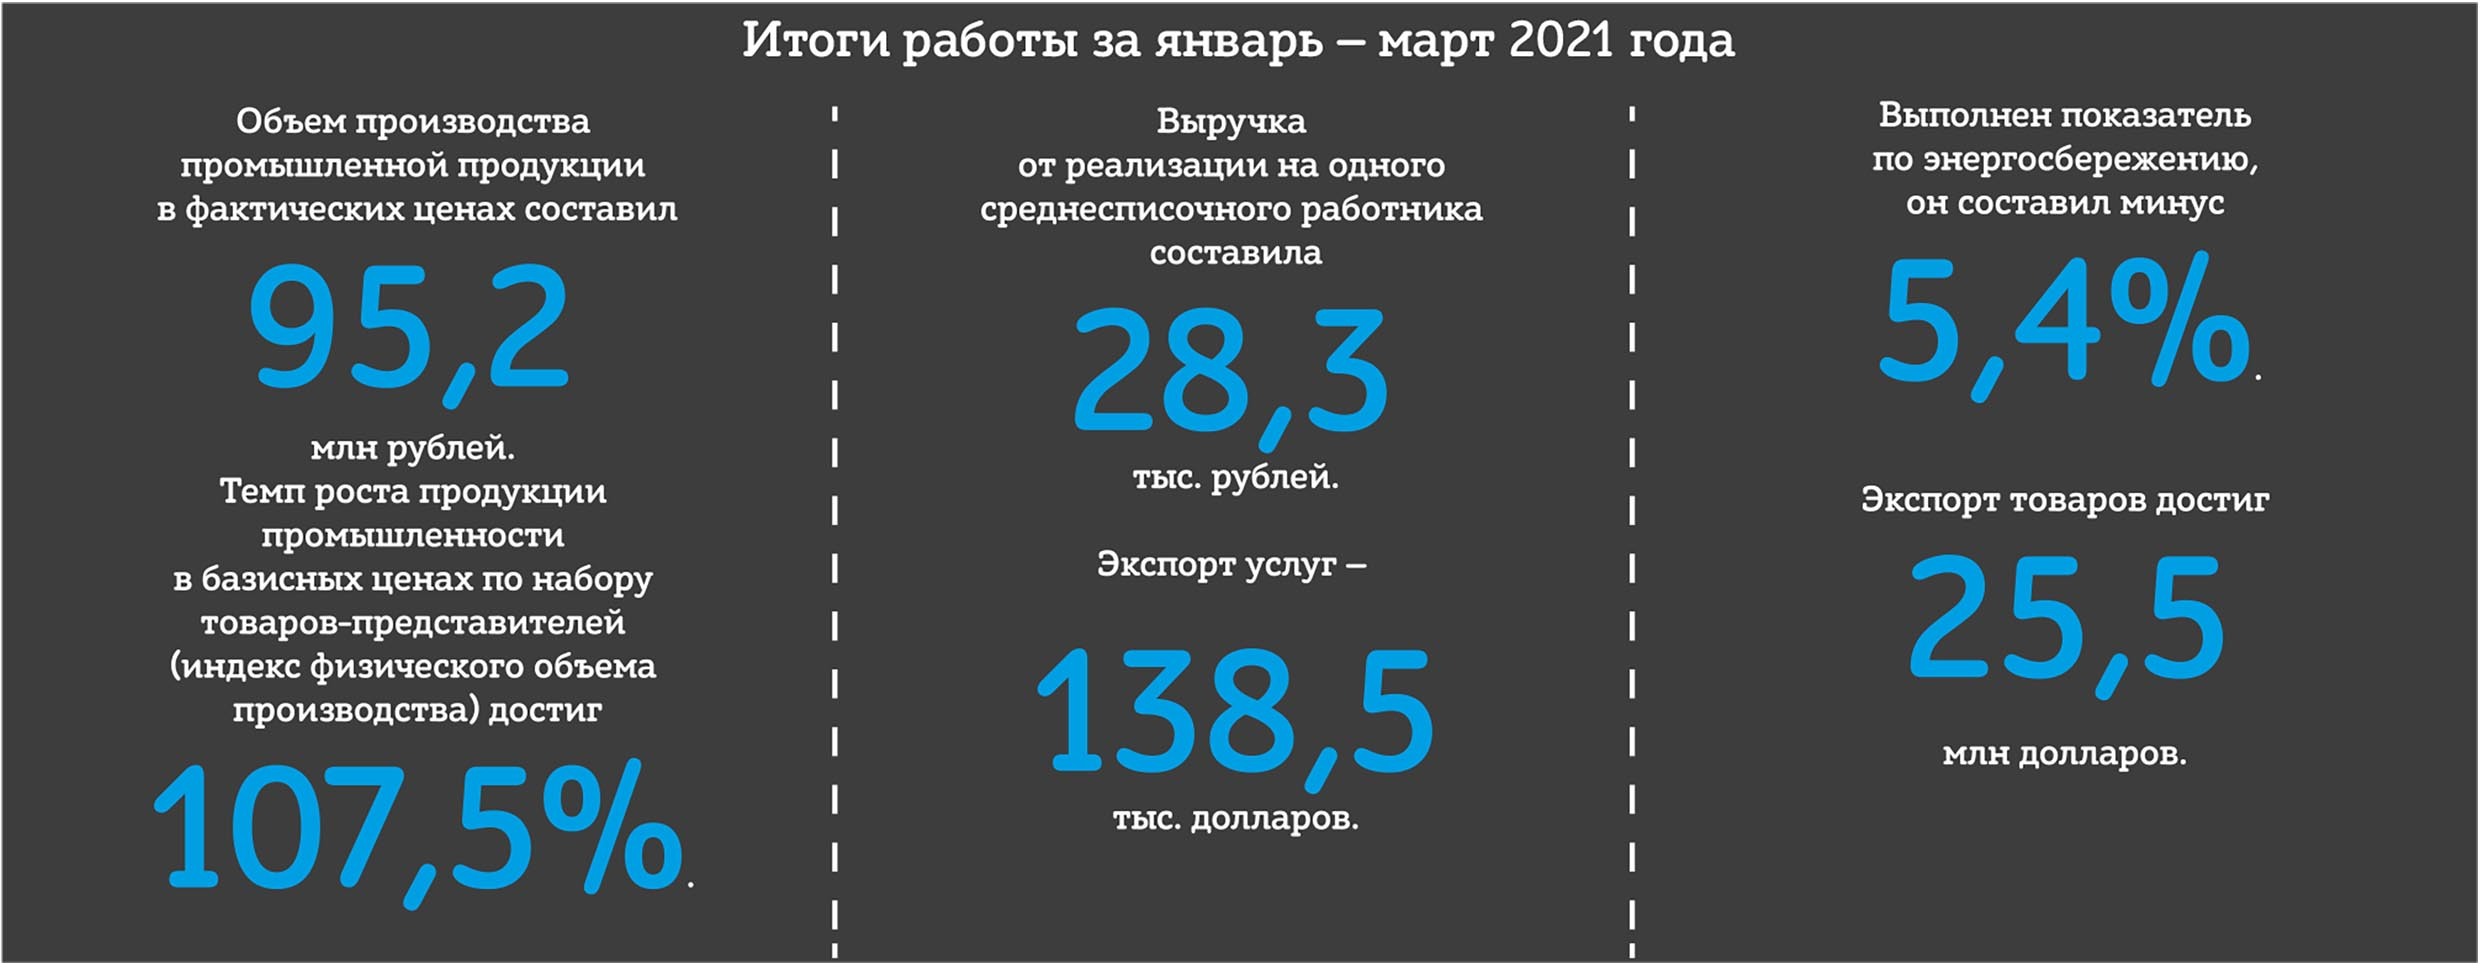 Итоги работы за январь — март 2021 года ОАО "СветлогорскХимволокно"